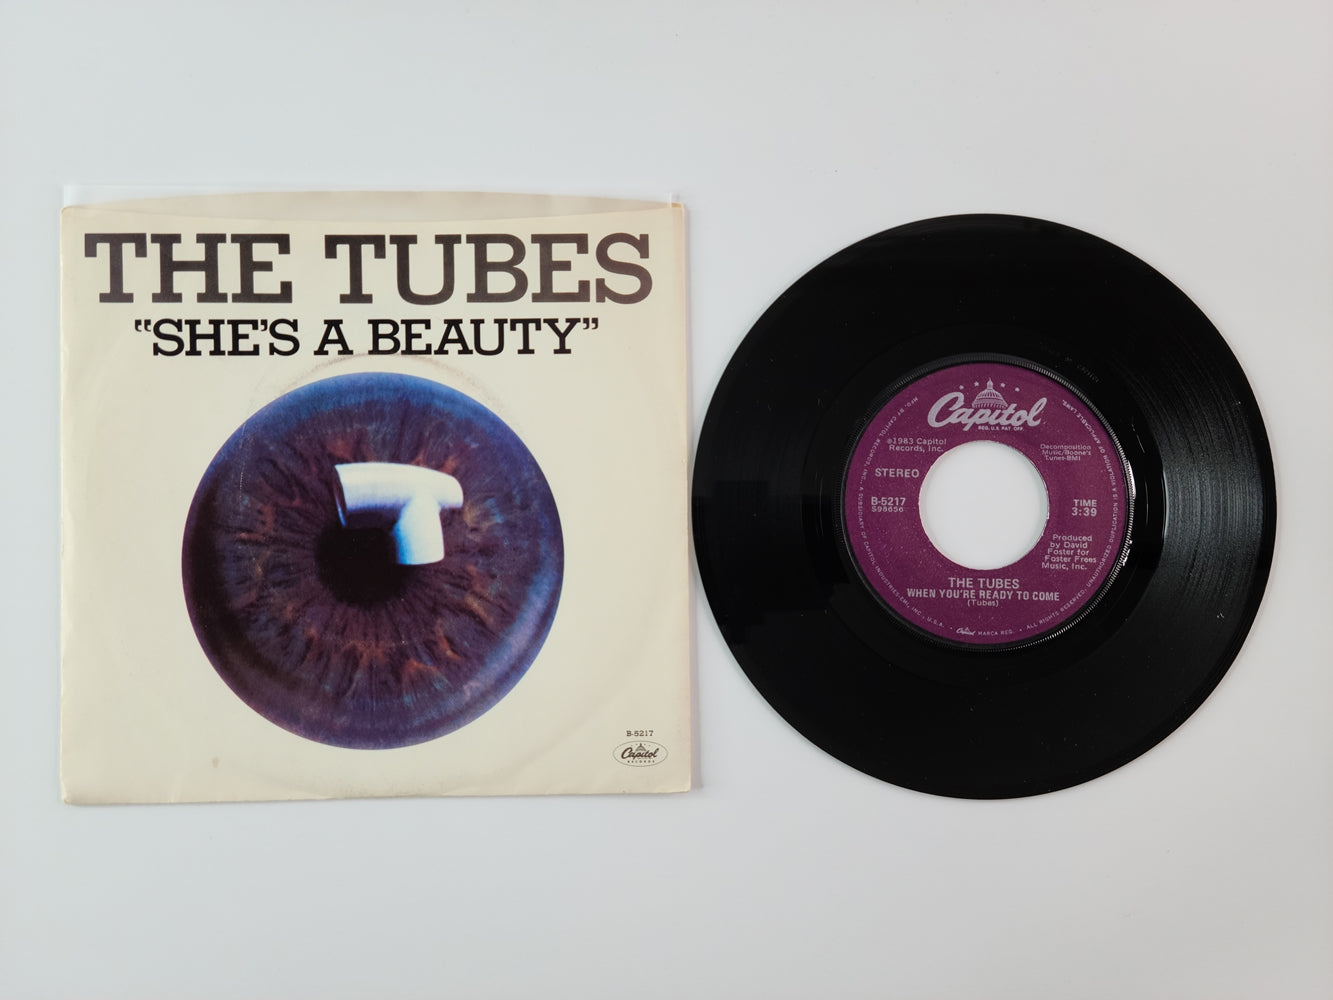 The Tubes - She's a Beauty (1983, 7'' Single)